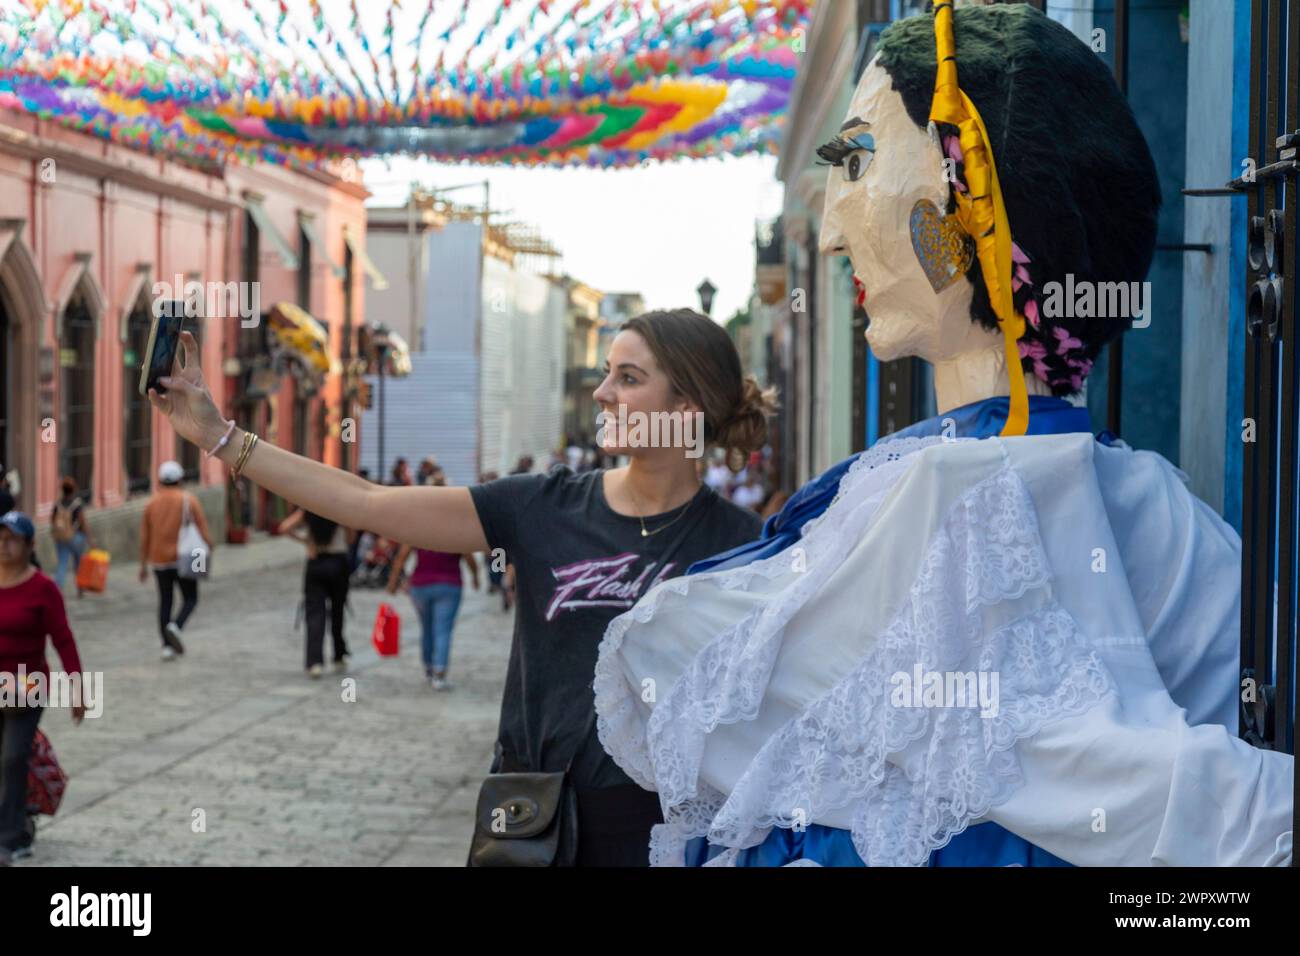 Oaxaca, Mexique - Un touriste prend un selfie avec une marionnette géante en papier mâché sur l'Alcala, une rue piétonne. Banque D'Images